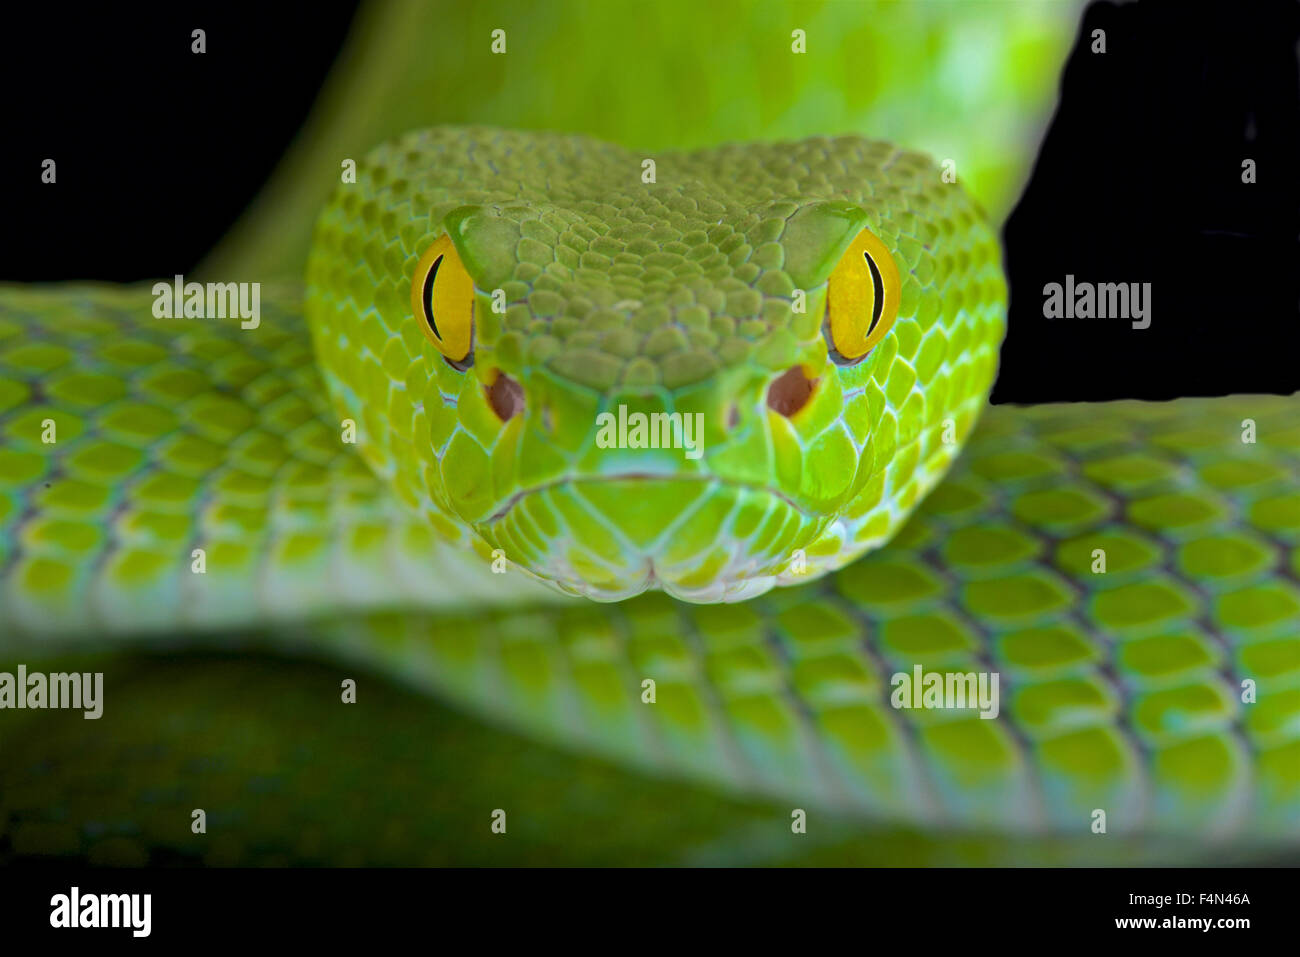 Occhi Di Serpente Velenoso Immagini e Fotos Stock - Alamy